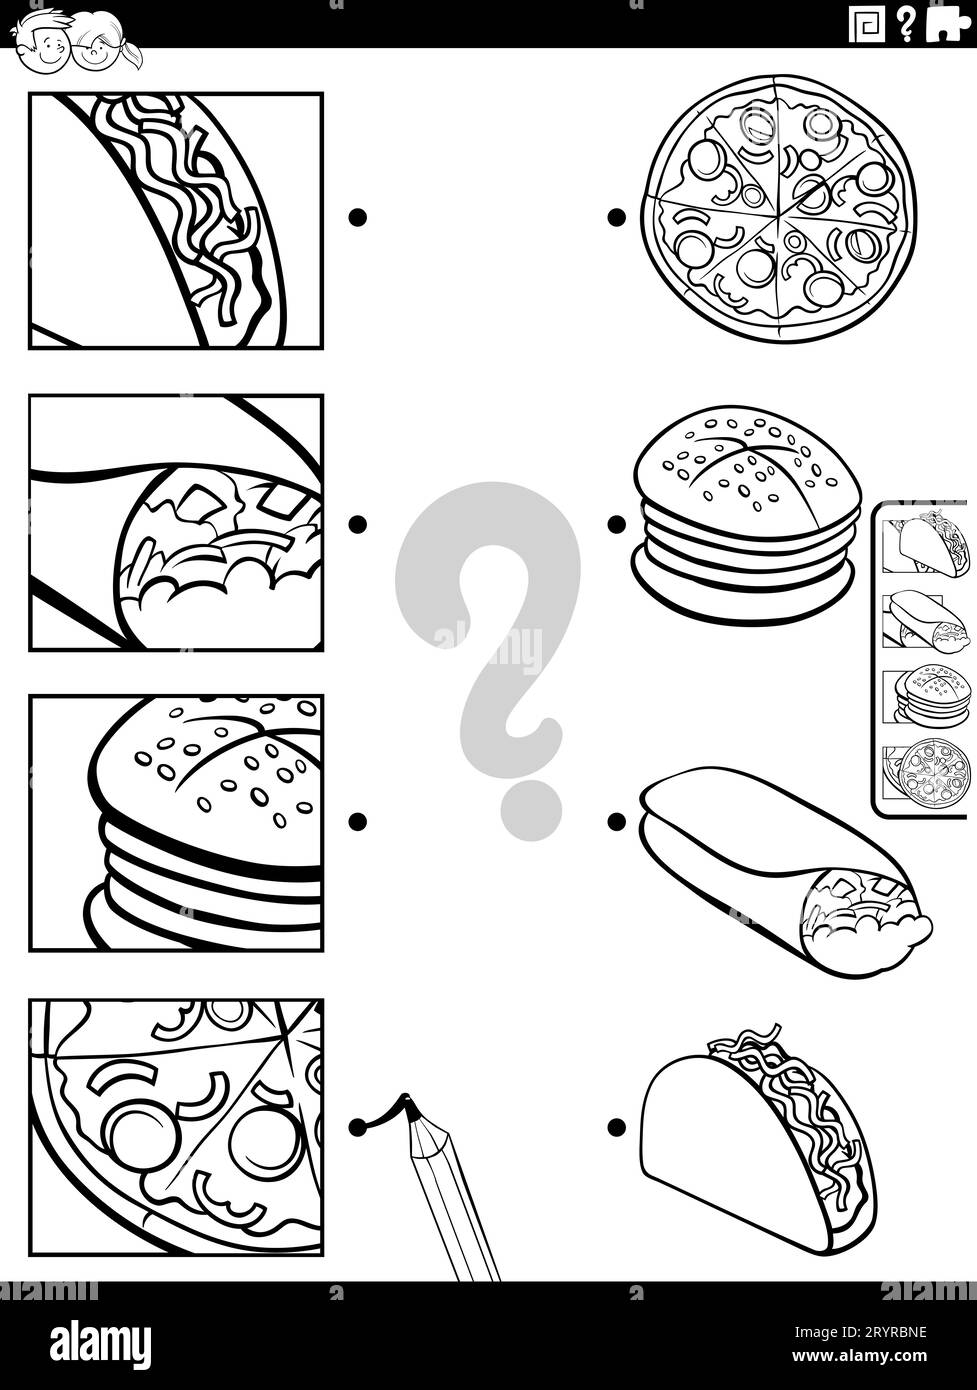 Schwarz-weiße Zeichentrickfilme, die ein pädagogisches Spiel mit Geschirr oder Essensgegenständen und einer Malseite für Bildausschnitte darstellen Stockfoto